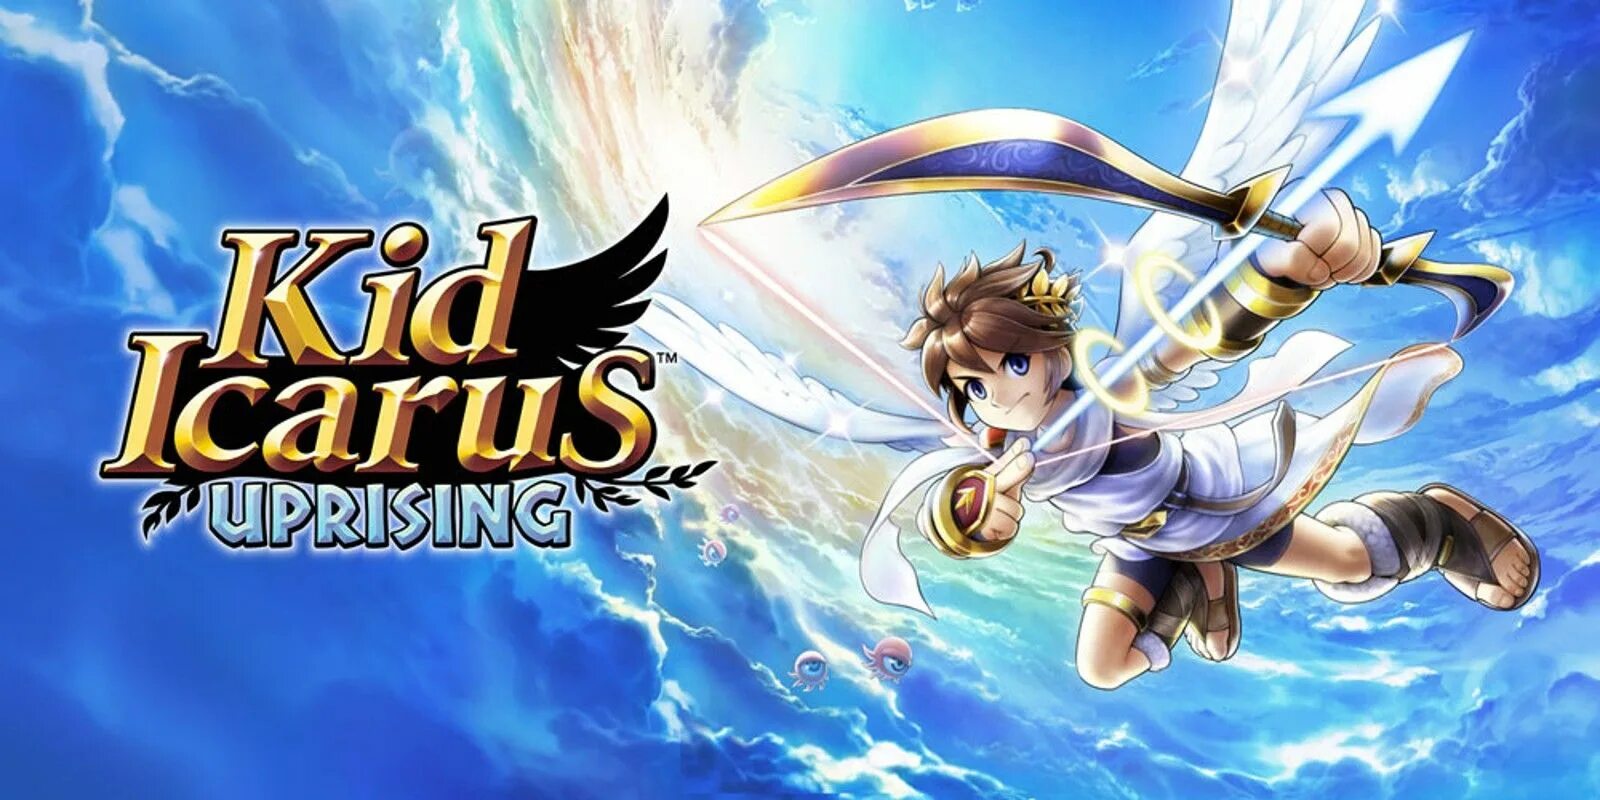 Kid icarus. Kid Icarus игра. КИД Икарус апрайзинг. Kid Icarus Uprising. Kid Icarus Uprising 3ds.